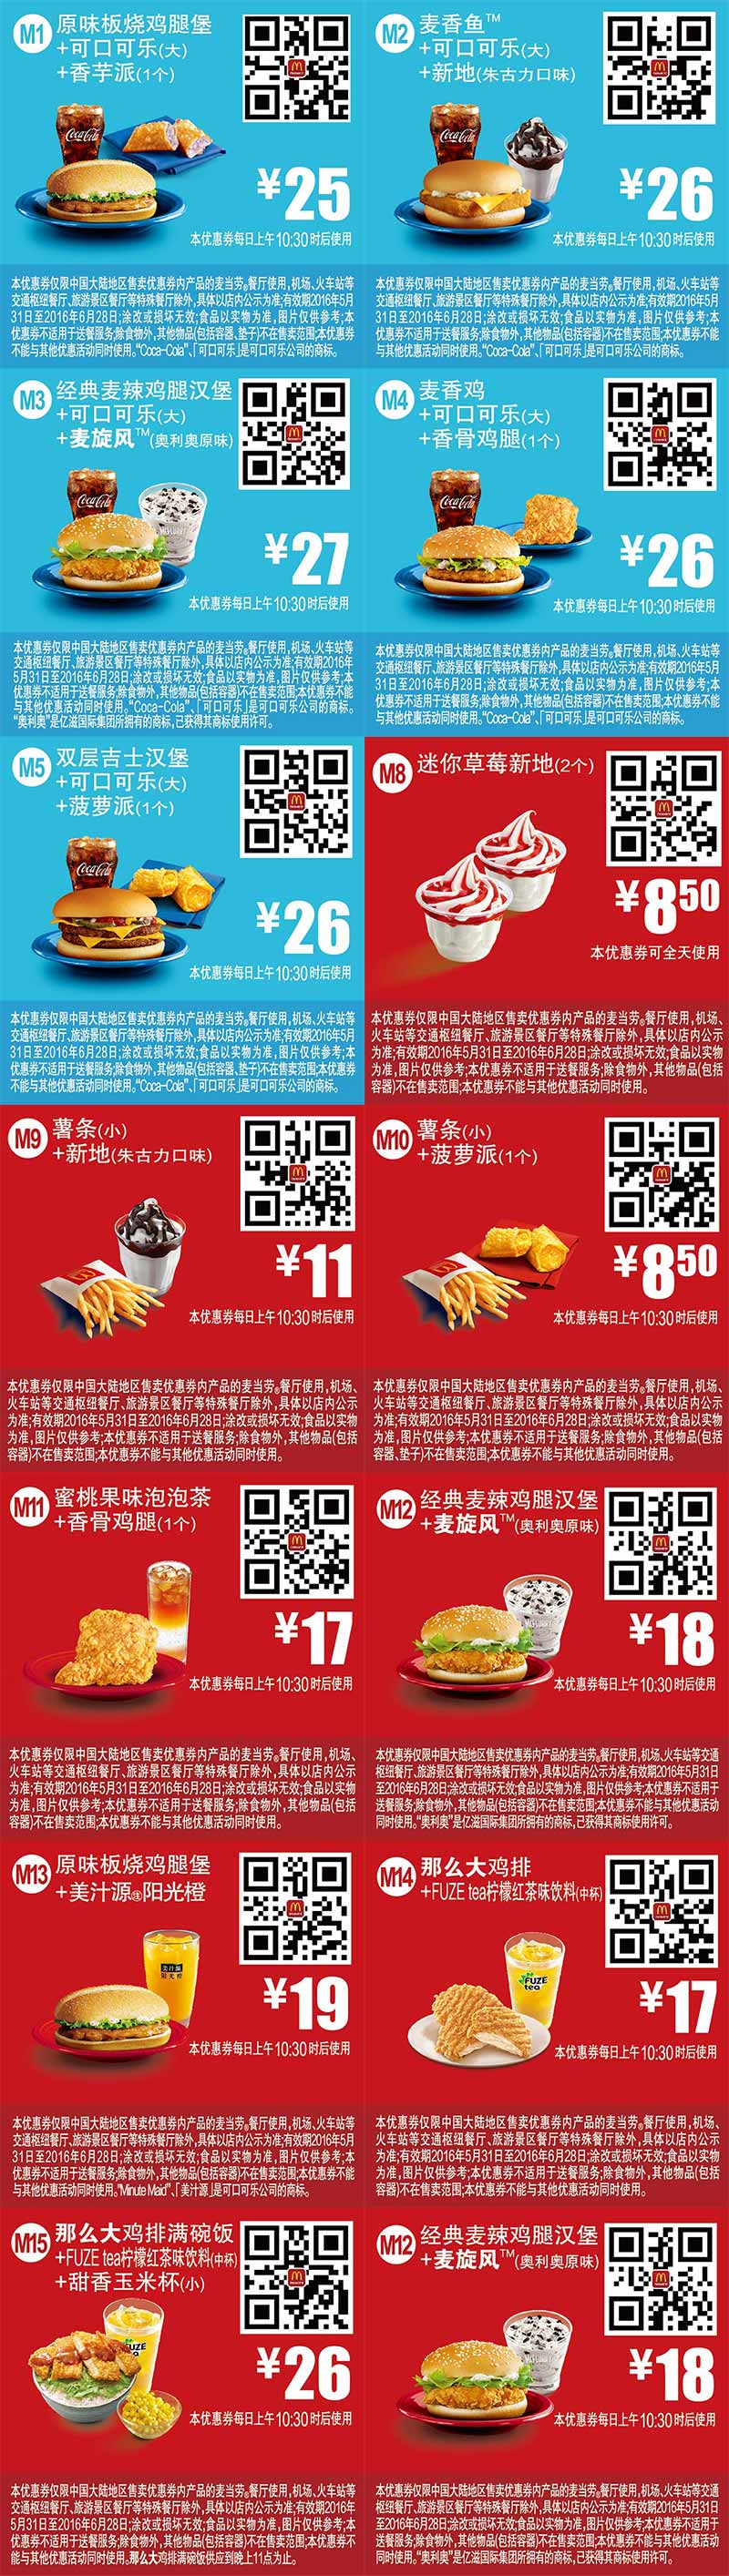 麦当劳优惠券2016年6月手机版整张版本，手机出示即享优惠价